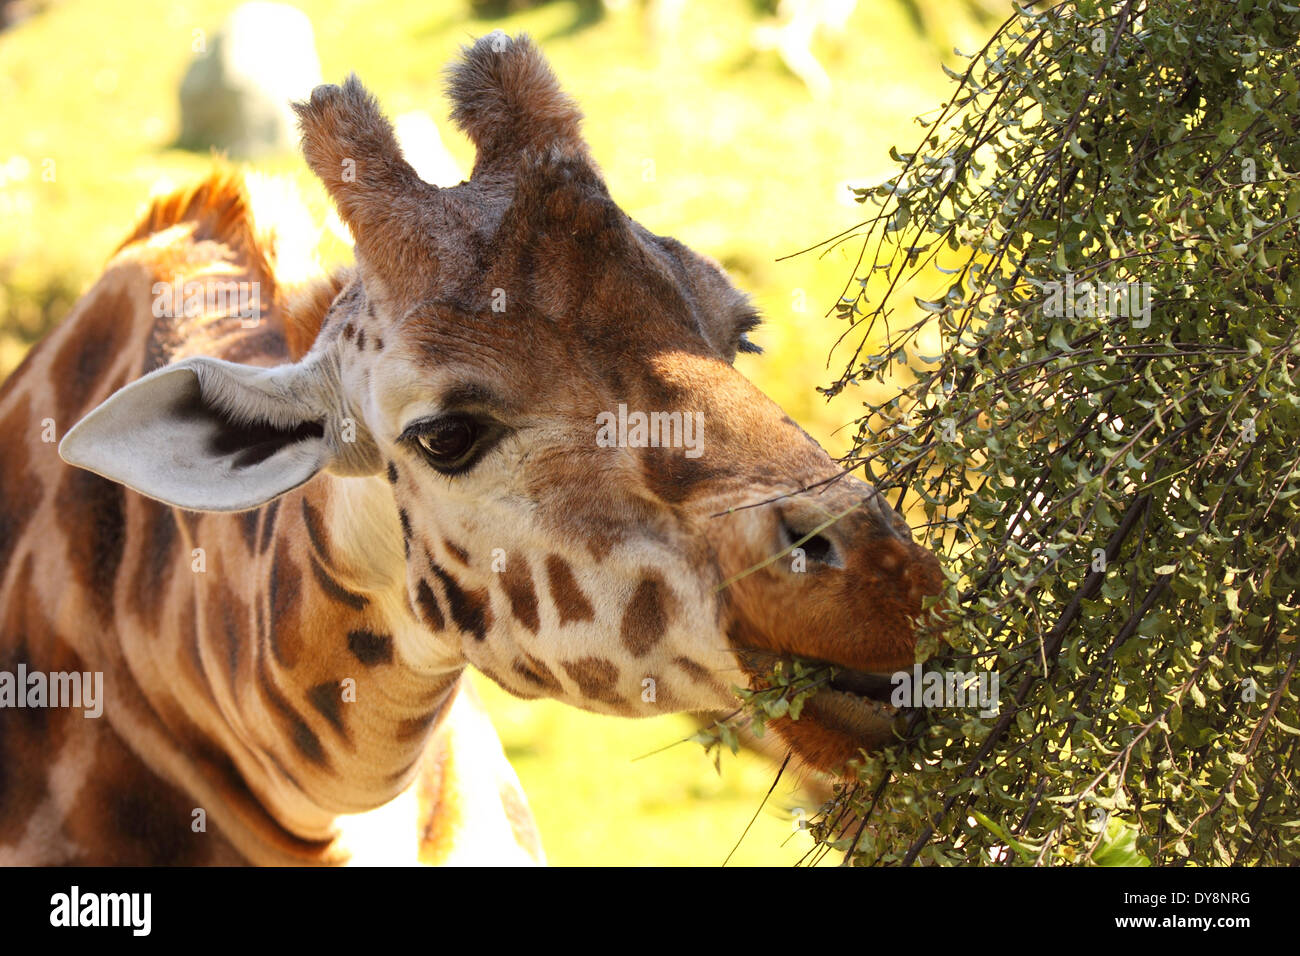 A Giraffe taking a bite. Stock Photo